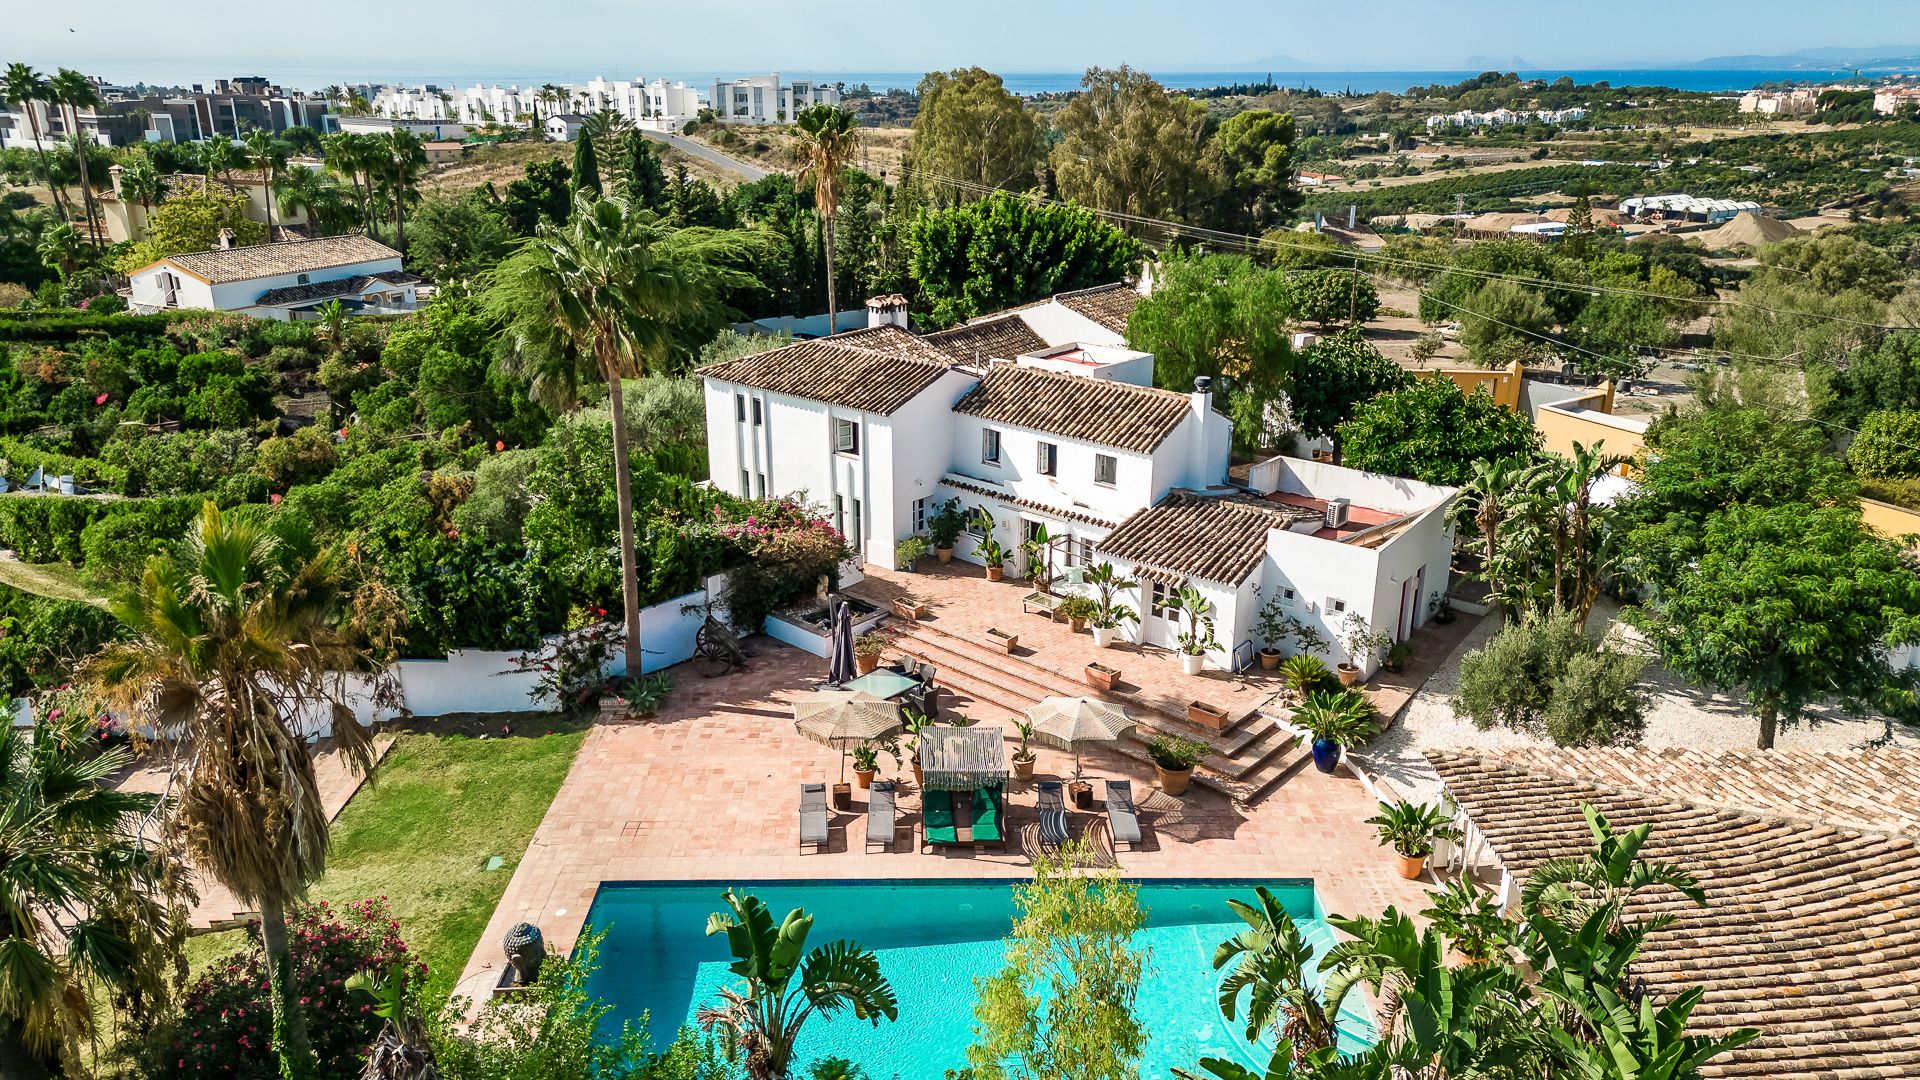 Cortijo Style estate with open views | Engel & Völkers Marbella